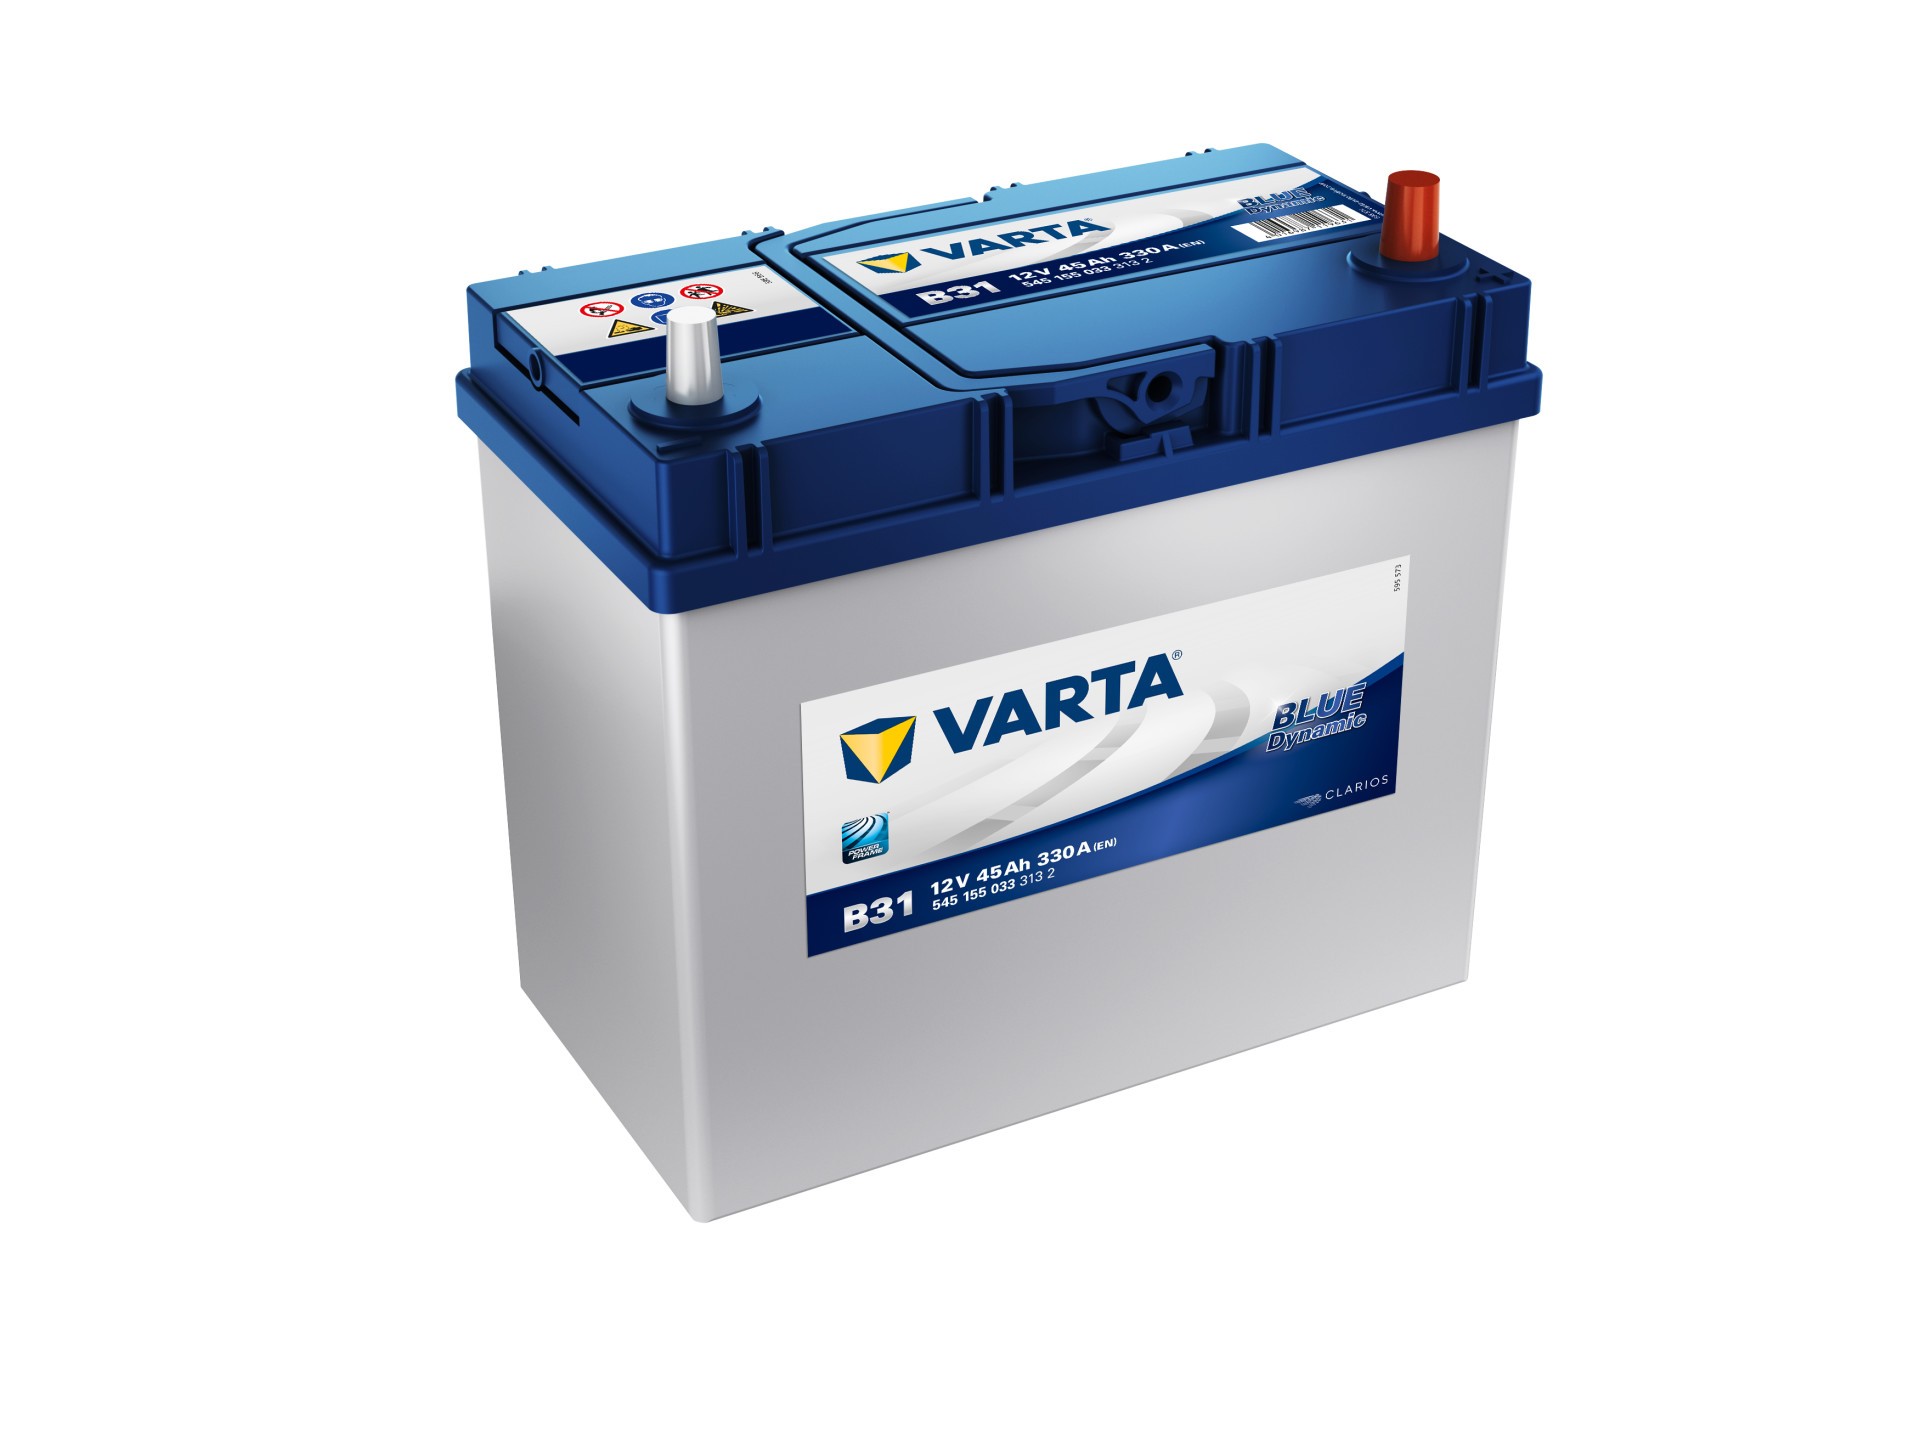 Varta | Starterbatterie BLUE dynamic 12V 45Ah 330A (5451550333132)